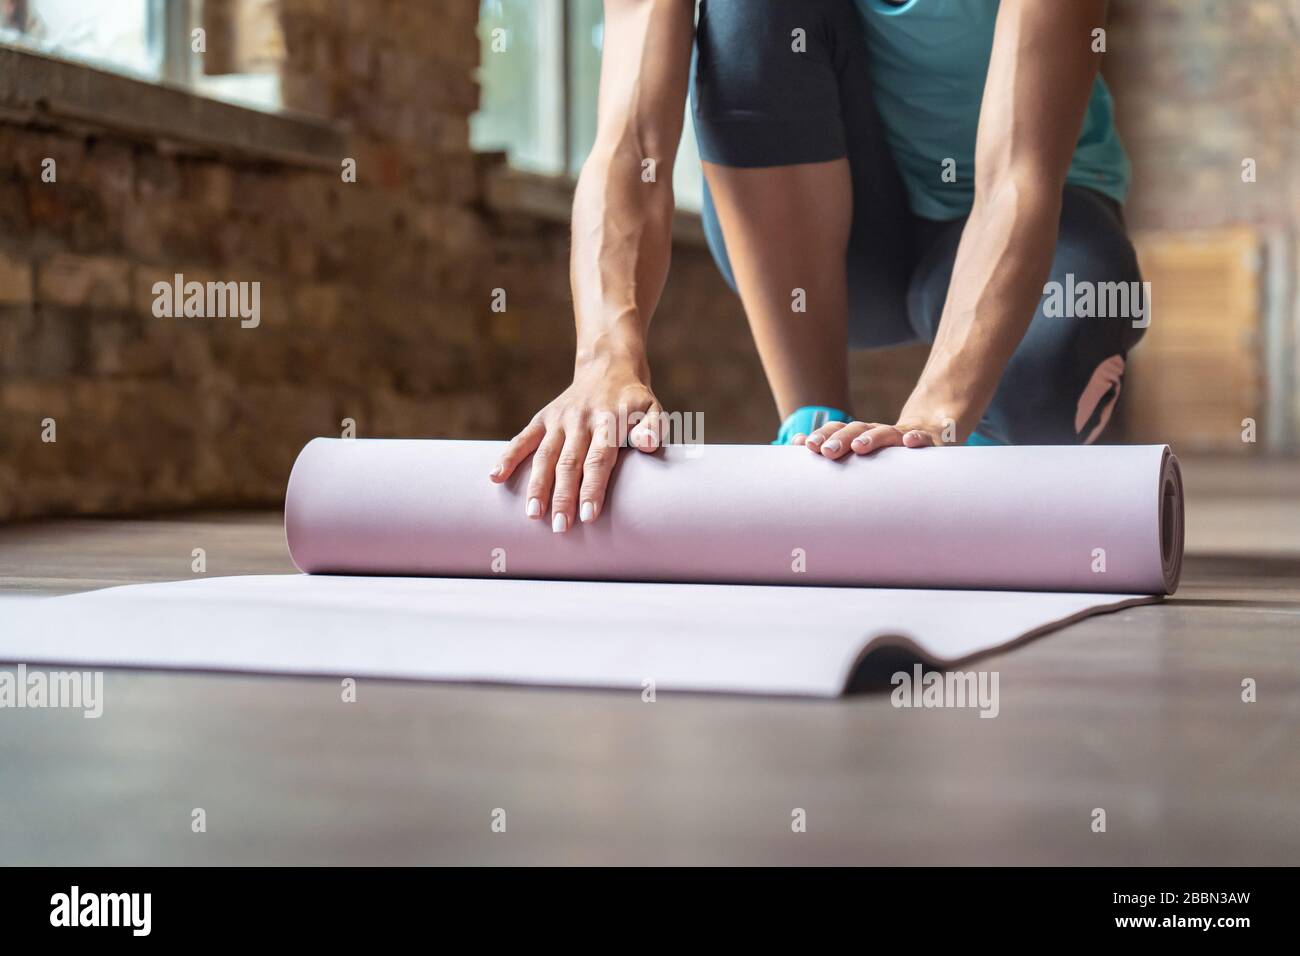 Athletic fit woman yoga instructor wear sportswear roll unroll yoga mat in gym. Stock Photo